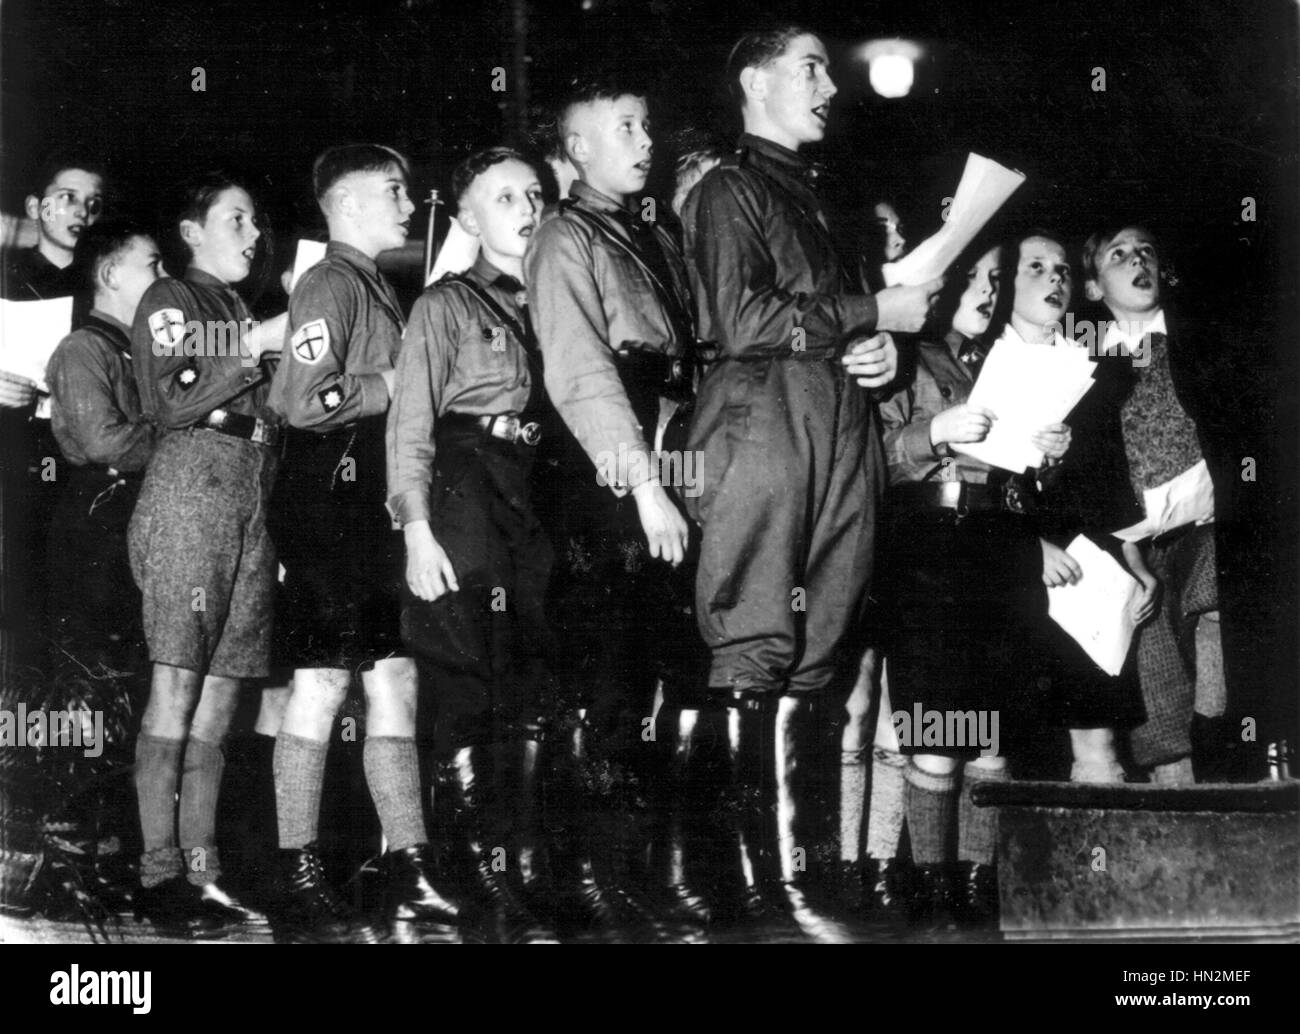 Berlín. Los jóvenes Hitlerians en uniforme, en alabanza de Hitler durante un festival de música en el 'Kroll Oper" de noviembre de 1933 Alemania Foto de stock